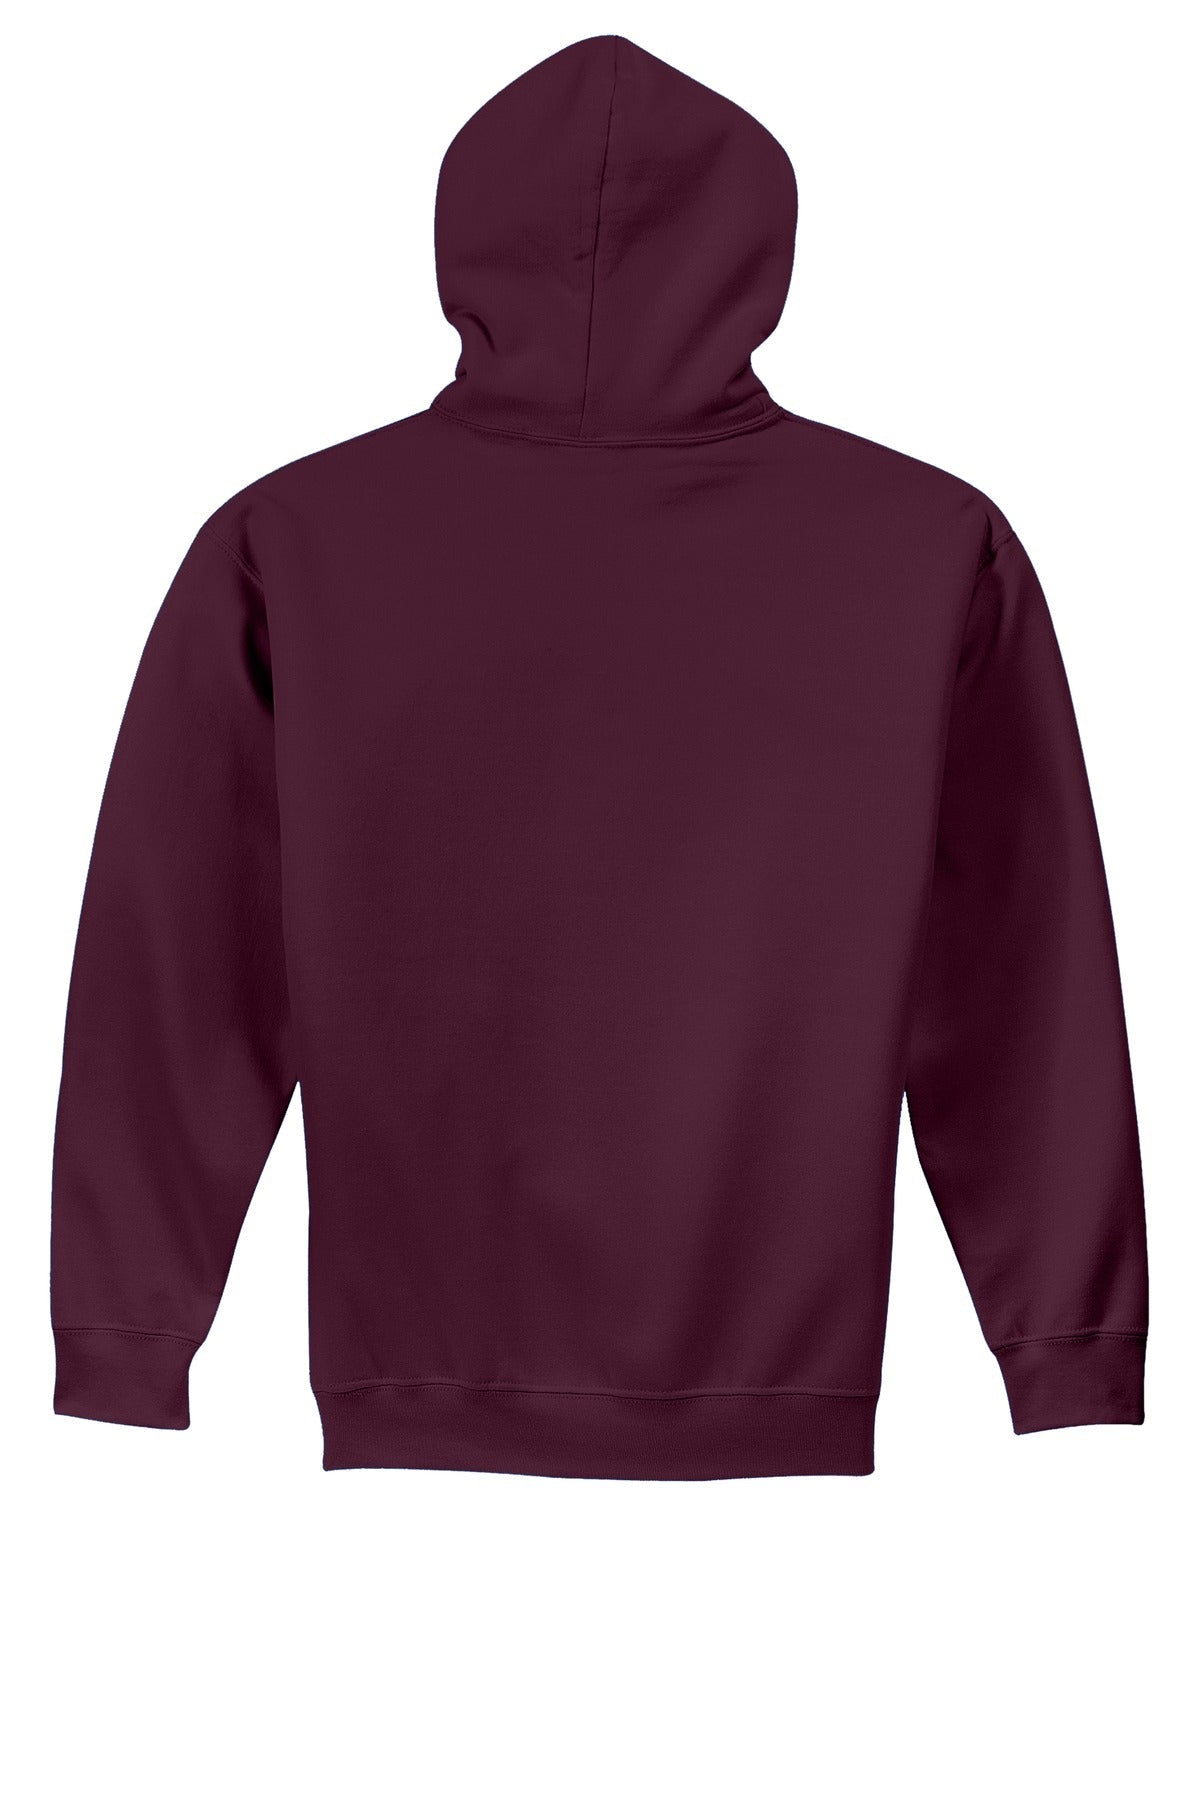 Gildan® - Youth Heavy Blend™ Hooded Sweatshirt. 18500B [Maroon] - DFW Impression